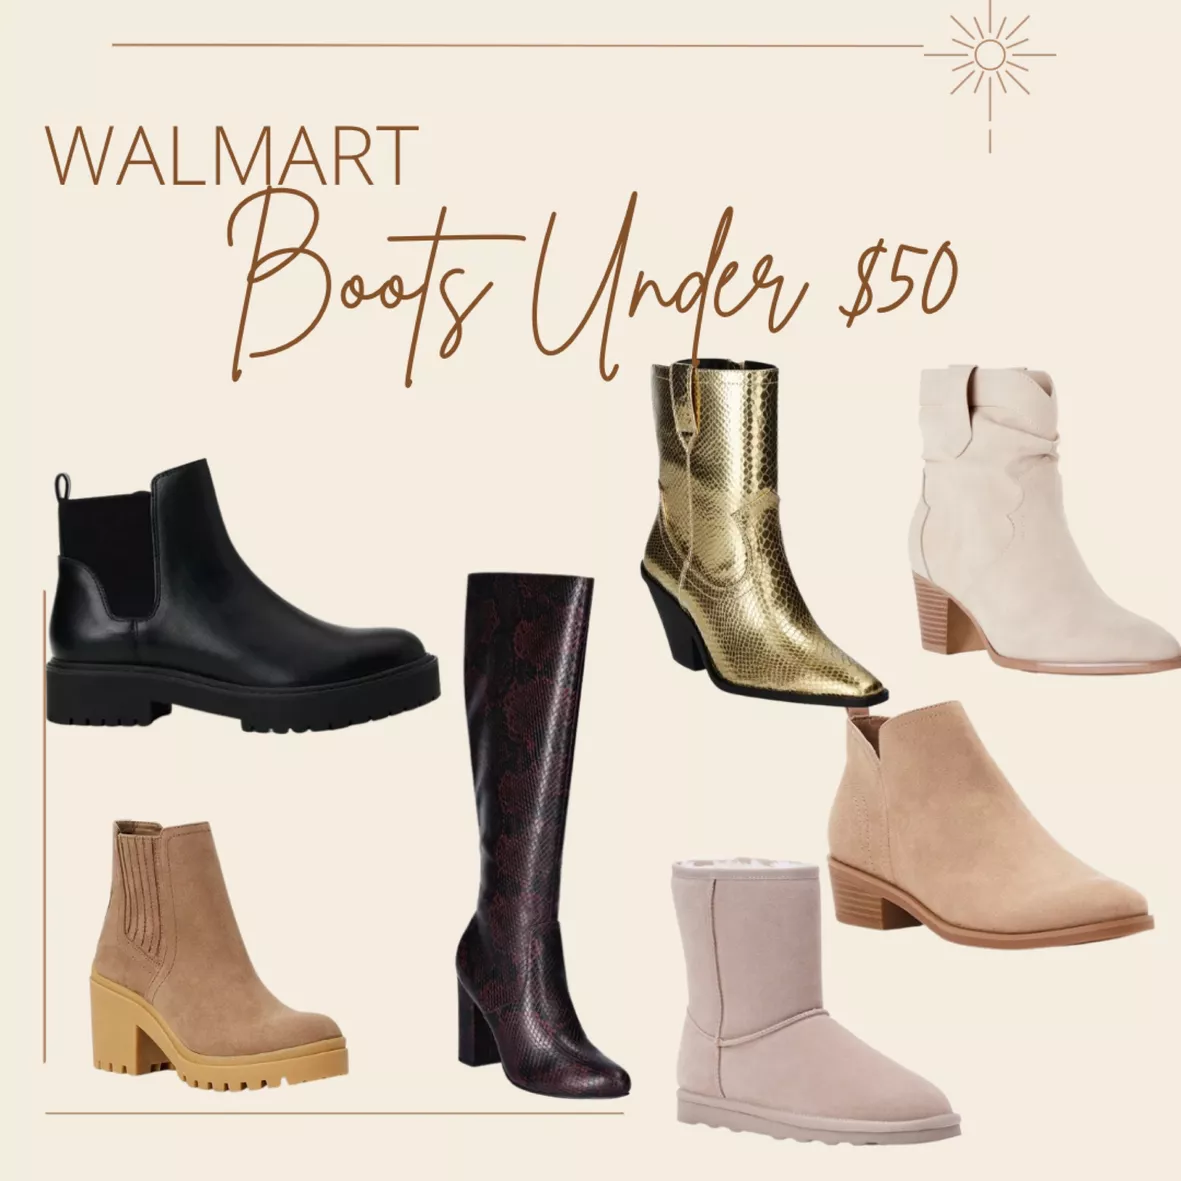 Walmart Women's Boots On Sale